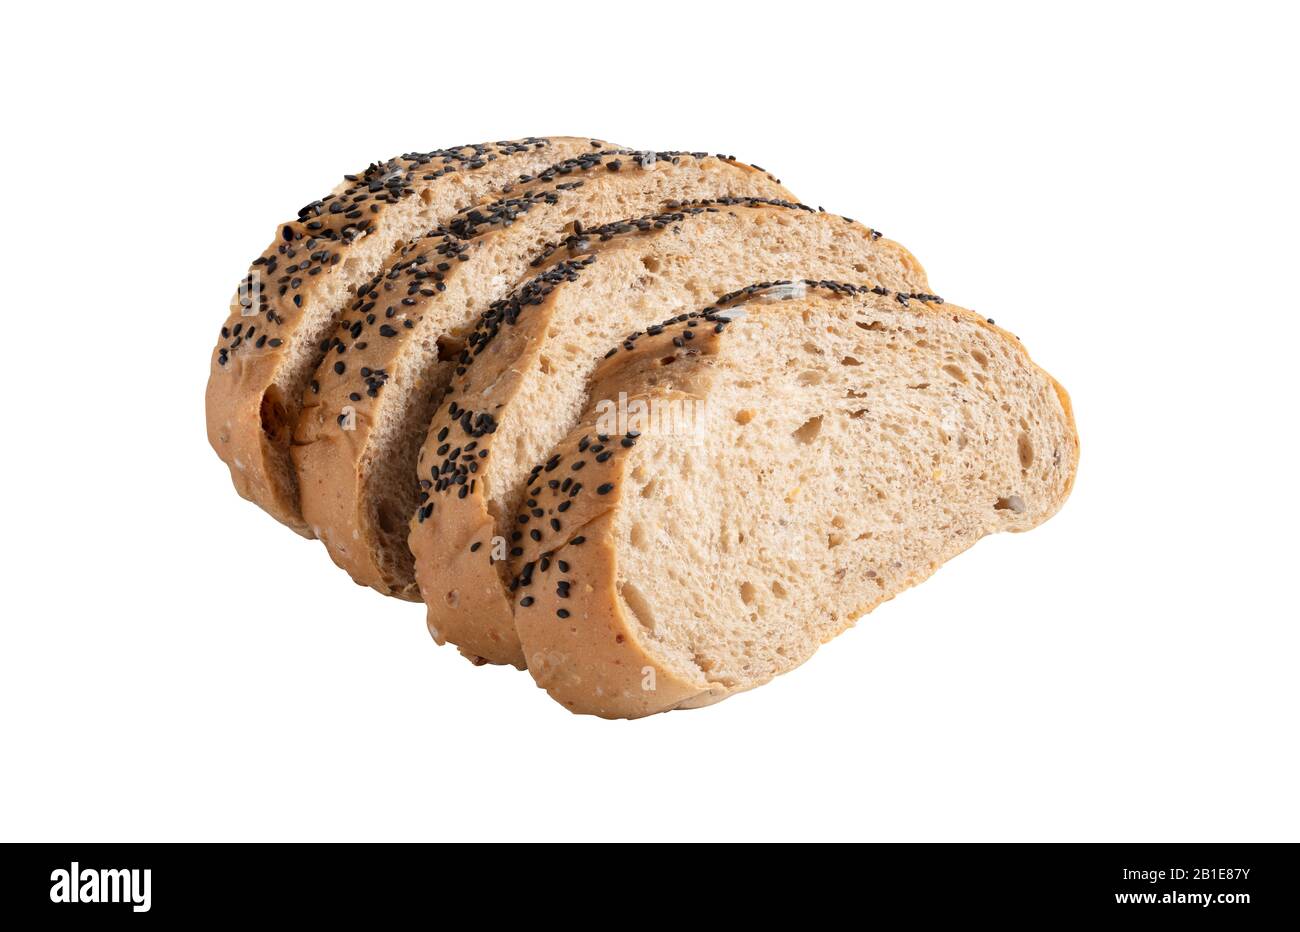 Il pane spruzzato con semi neri di sesamo che sono scaduti e hanno muffa sulla superficie del pane. A fette ​​bread isolato su sfondo bianco w Foto Stock